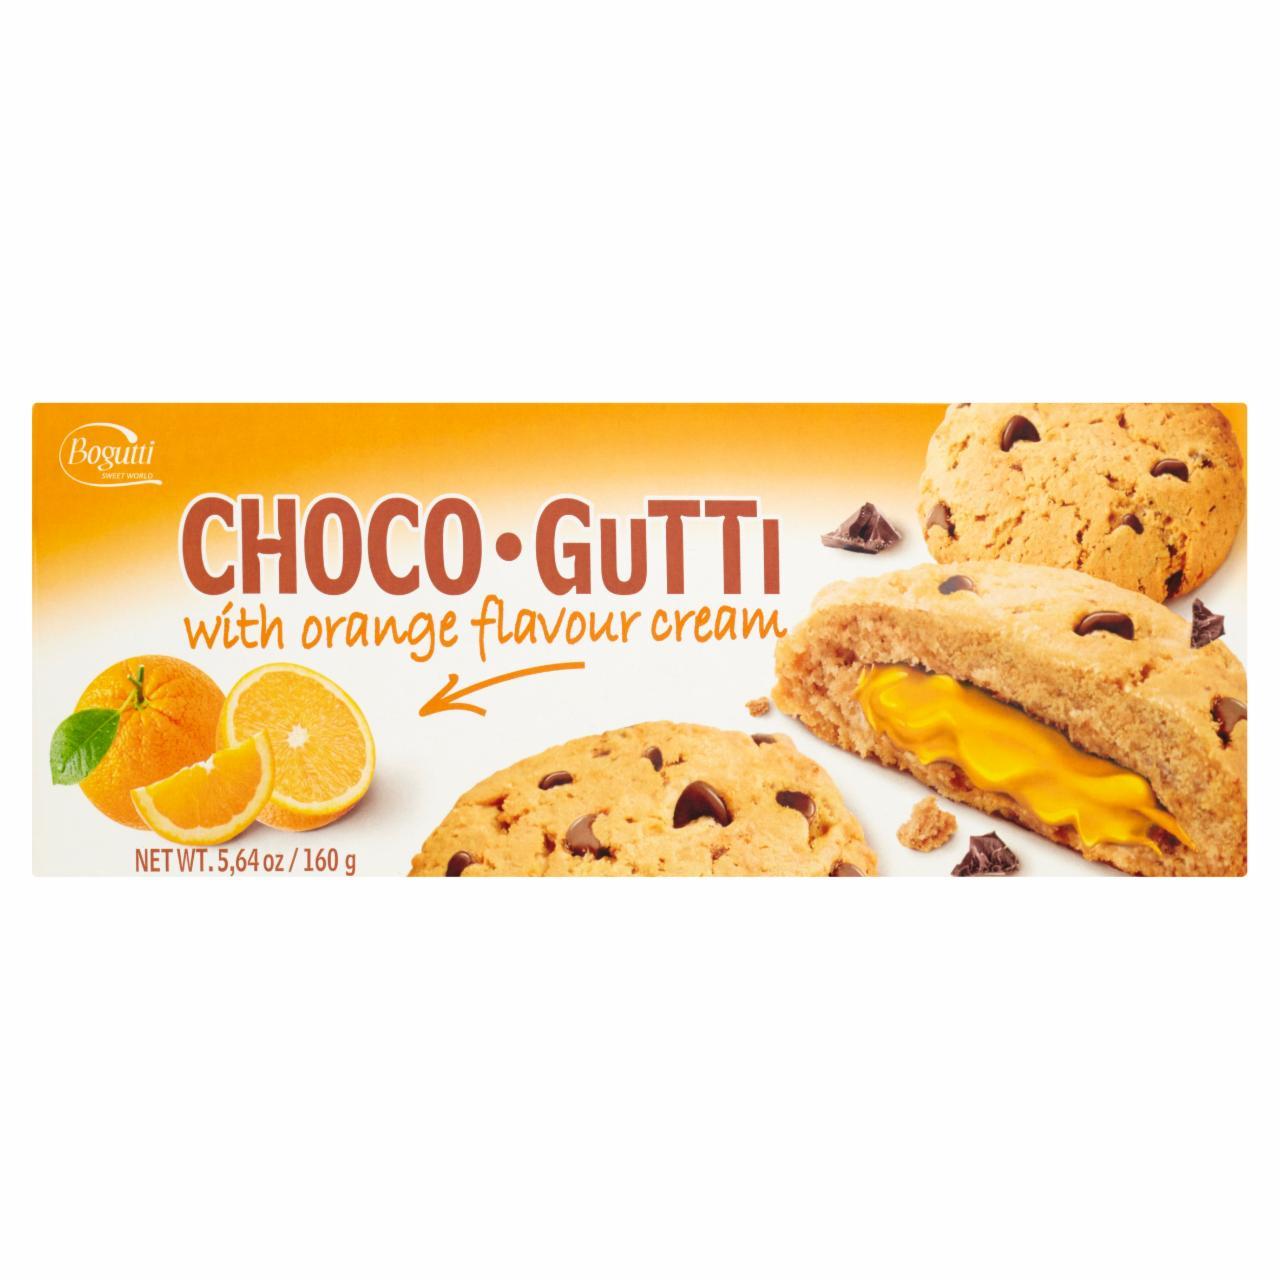 Zdjęcia - Choco Gutti Kruche ciasteczka z kawałkami czekolady i kremem o smaku pomarańczowym Bogutti